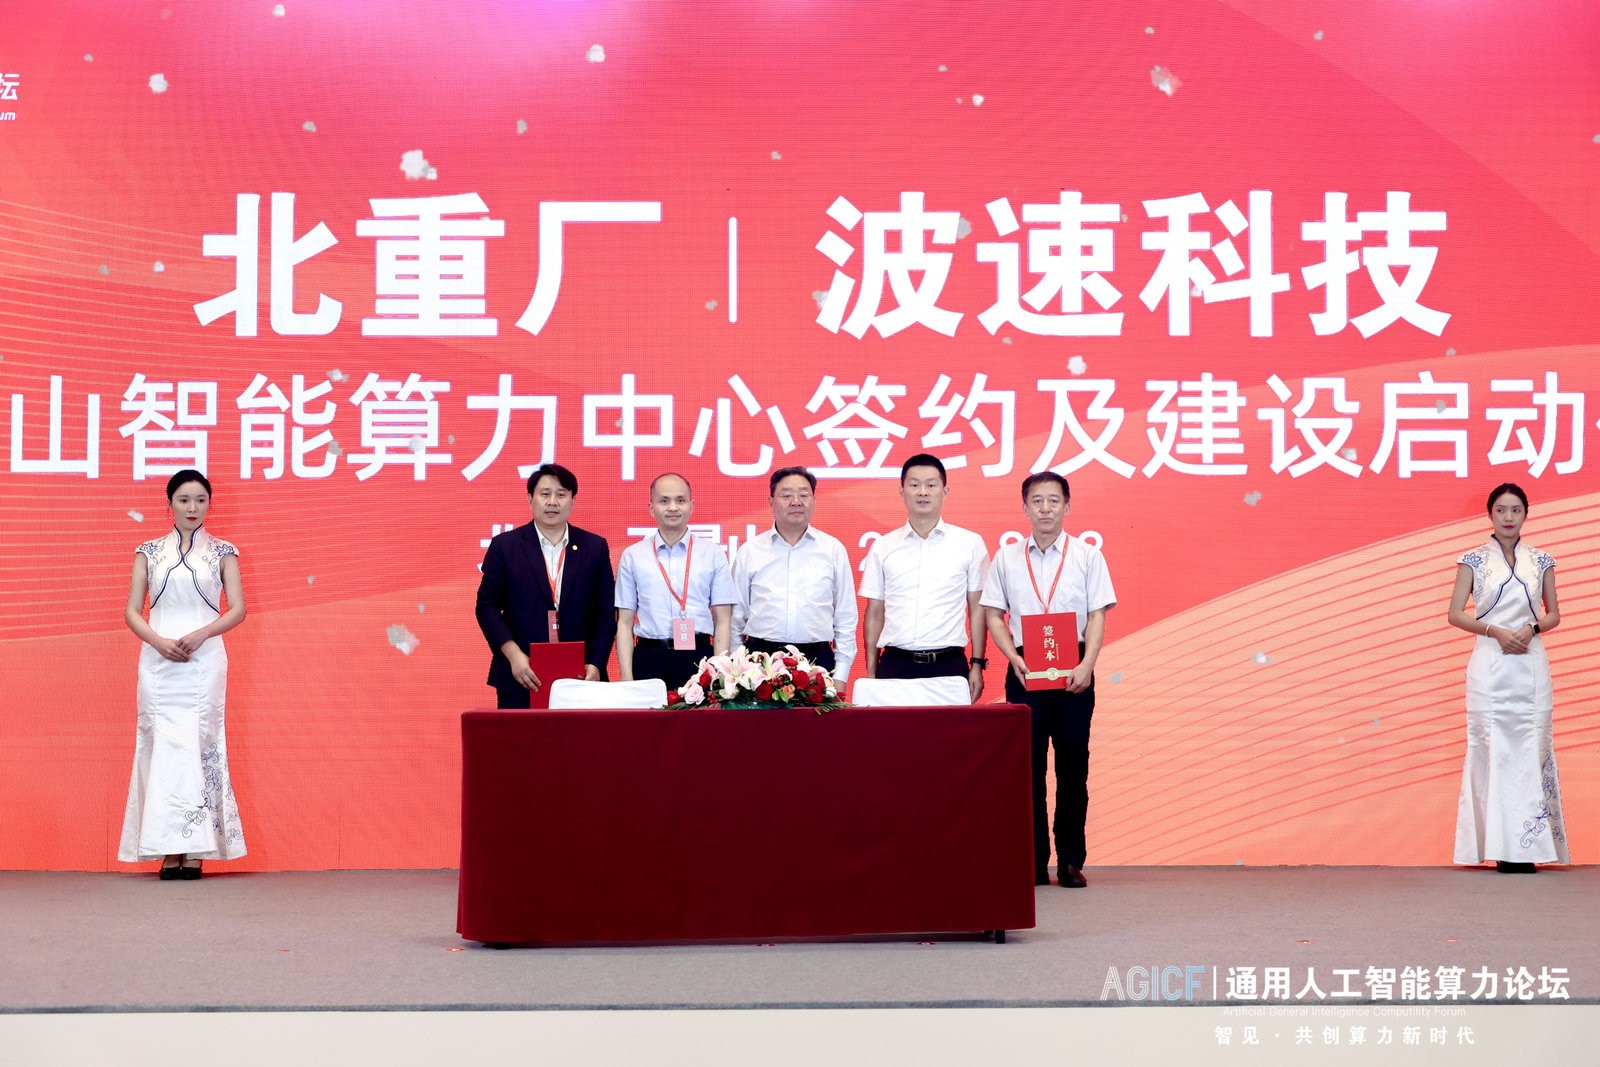 北京又添人工智能大型基础底座 石景山智能算力中心举行项目签约仪式